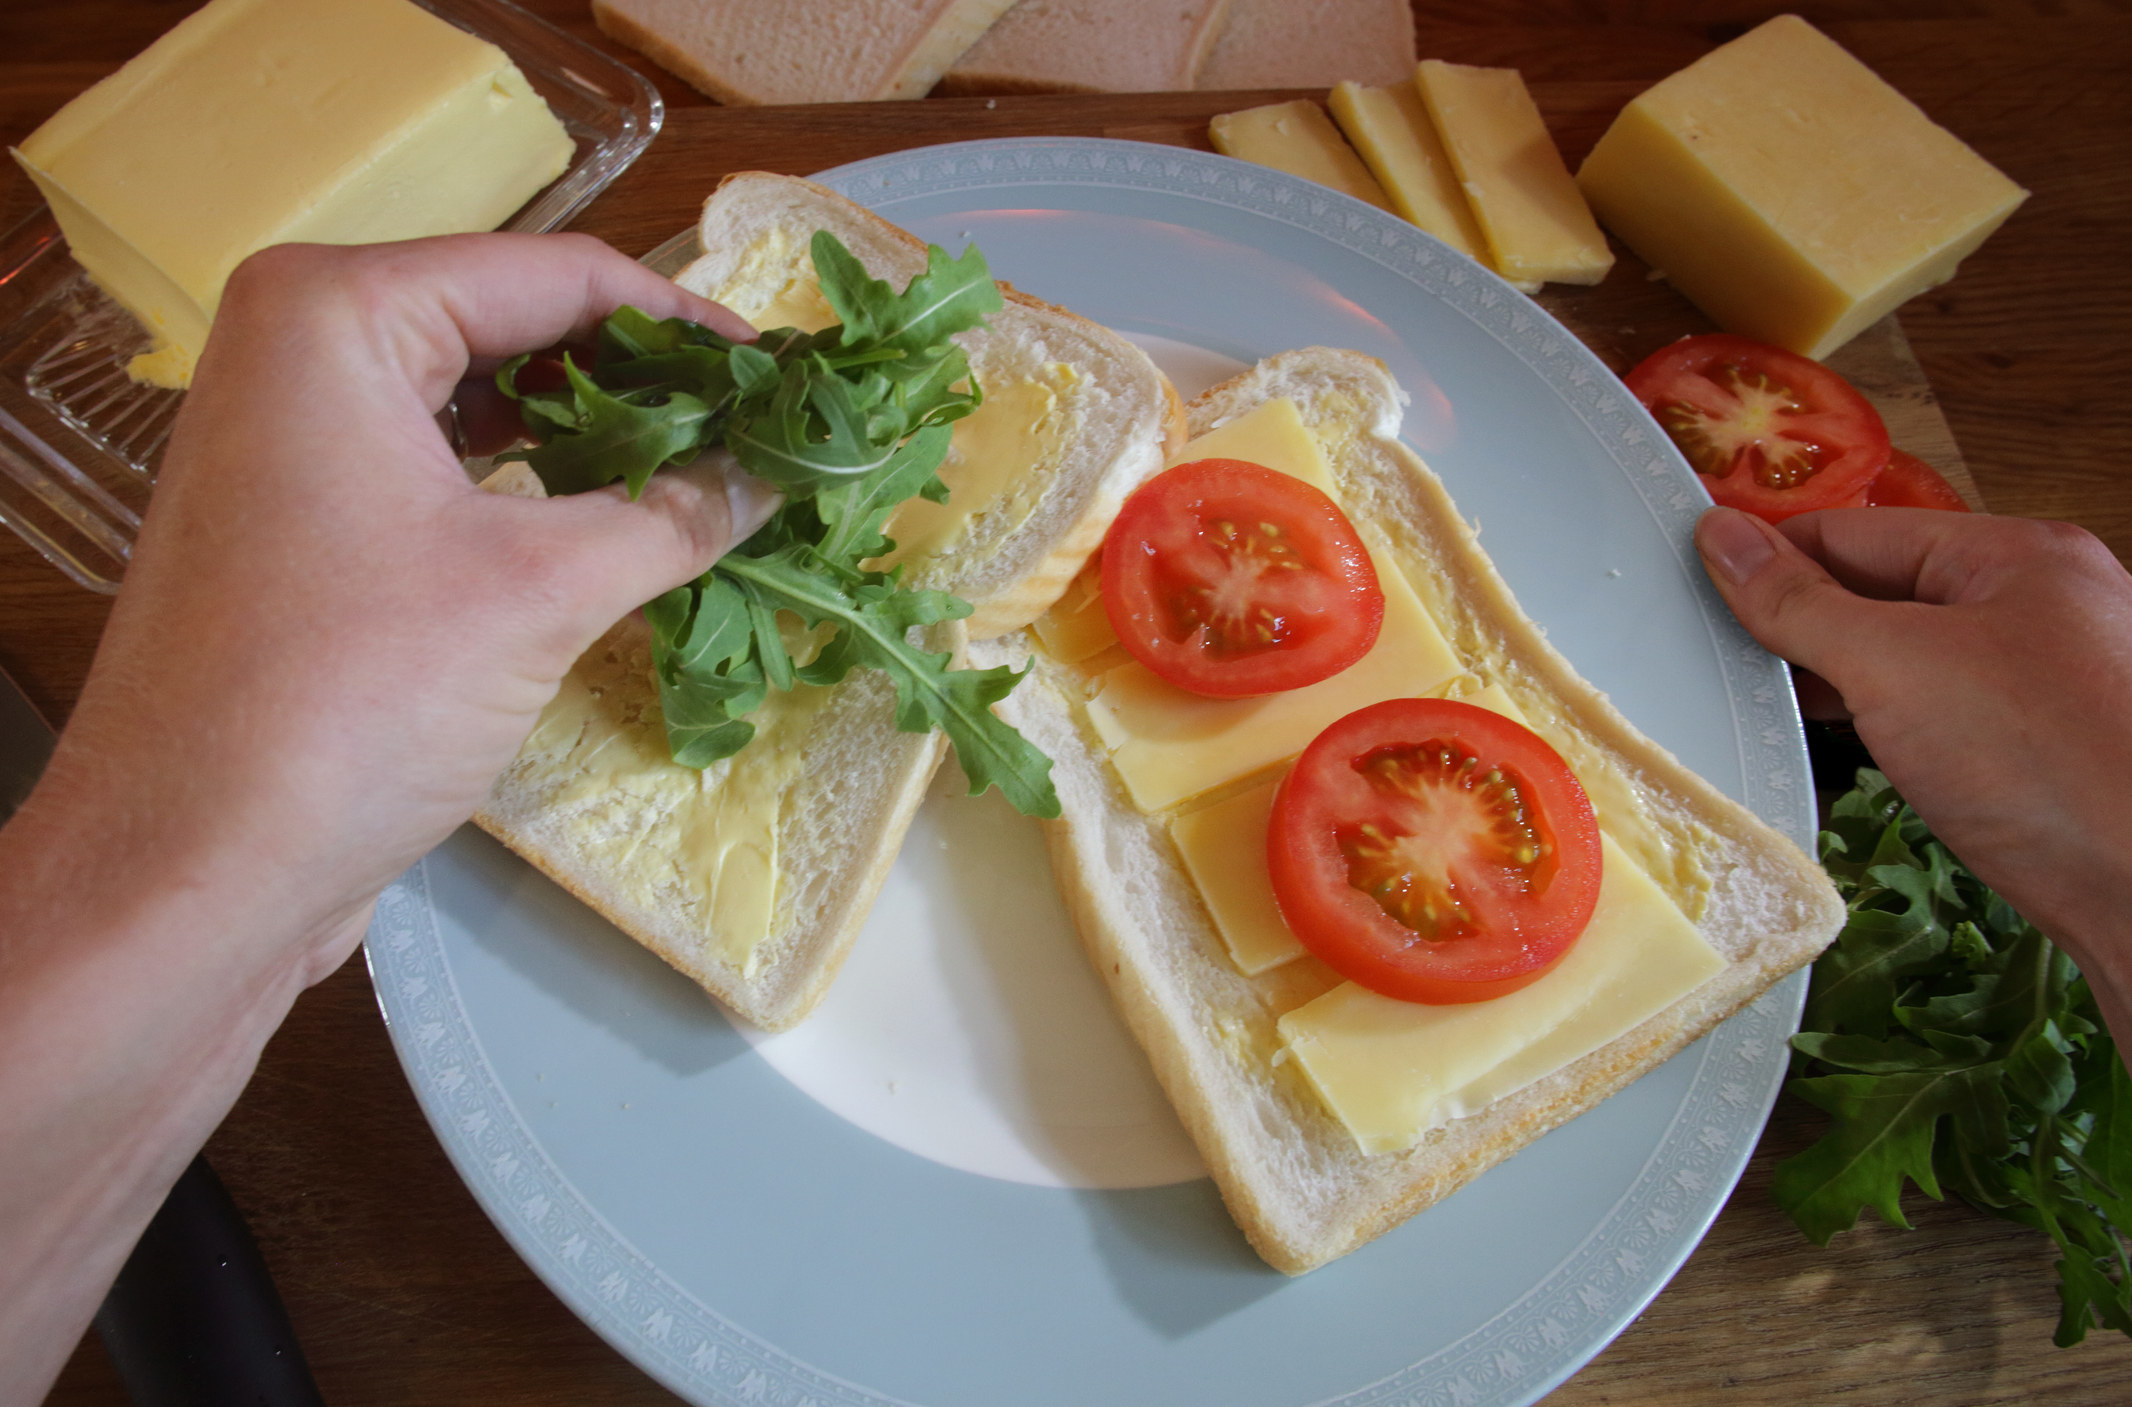 Making a cheese, tomato, and arugula sandwich.